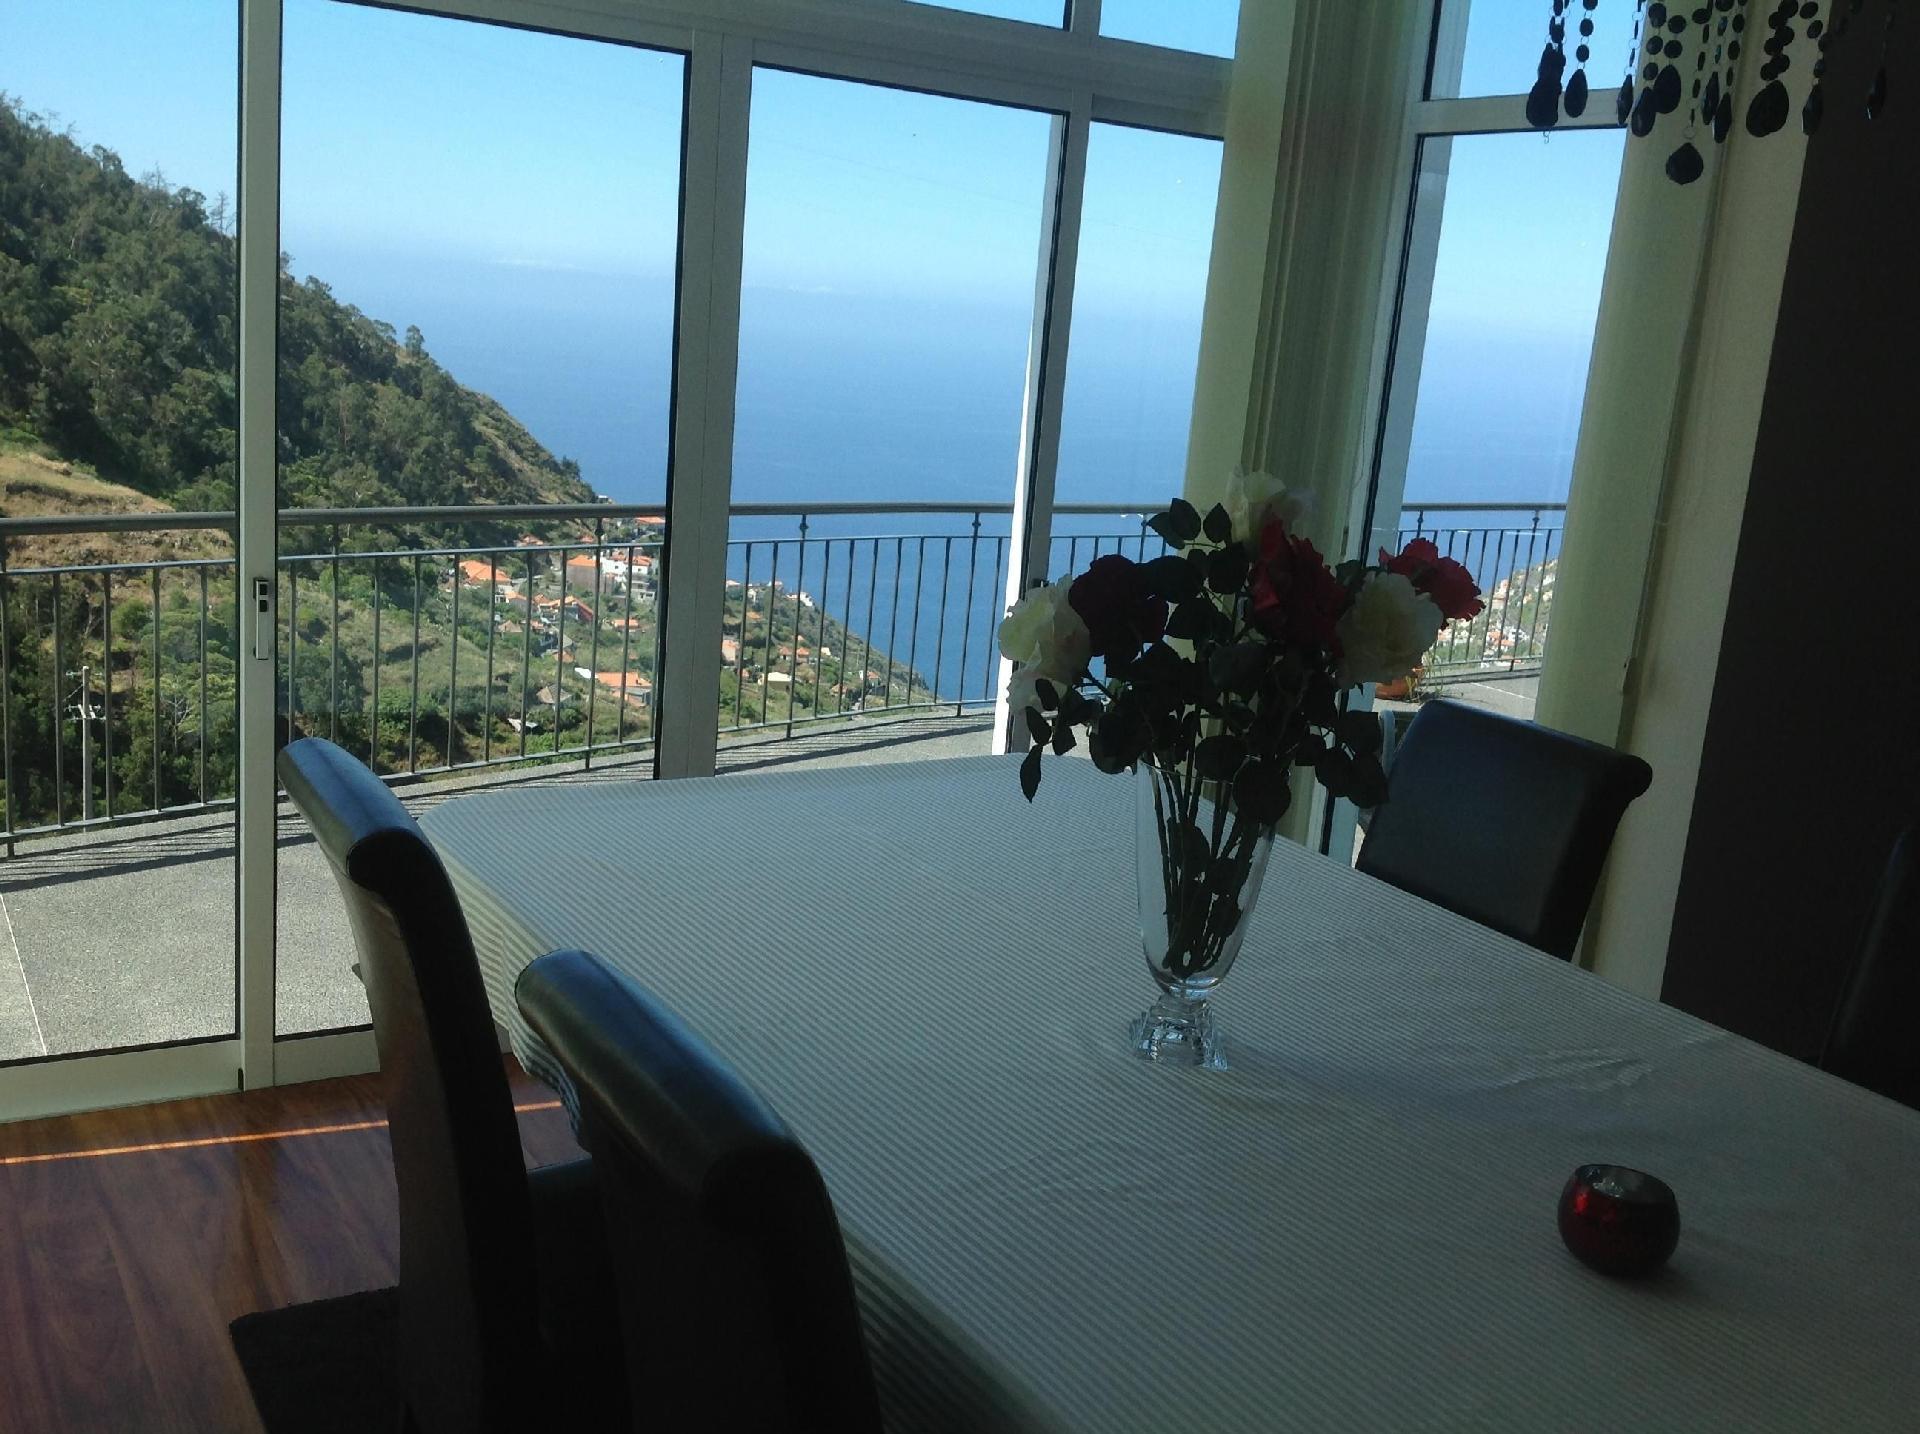 Am Berghang gelegenes Haus mit tollem Blick auf da Ferienhaus auf Madeira